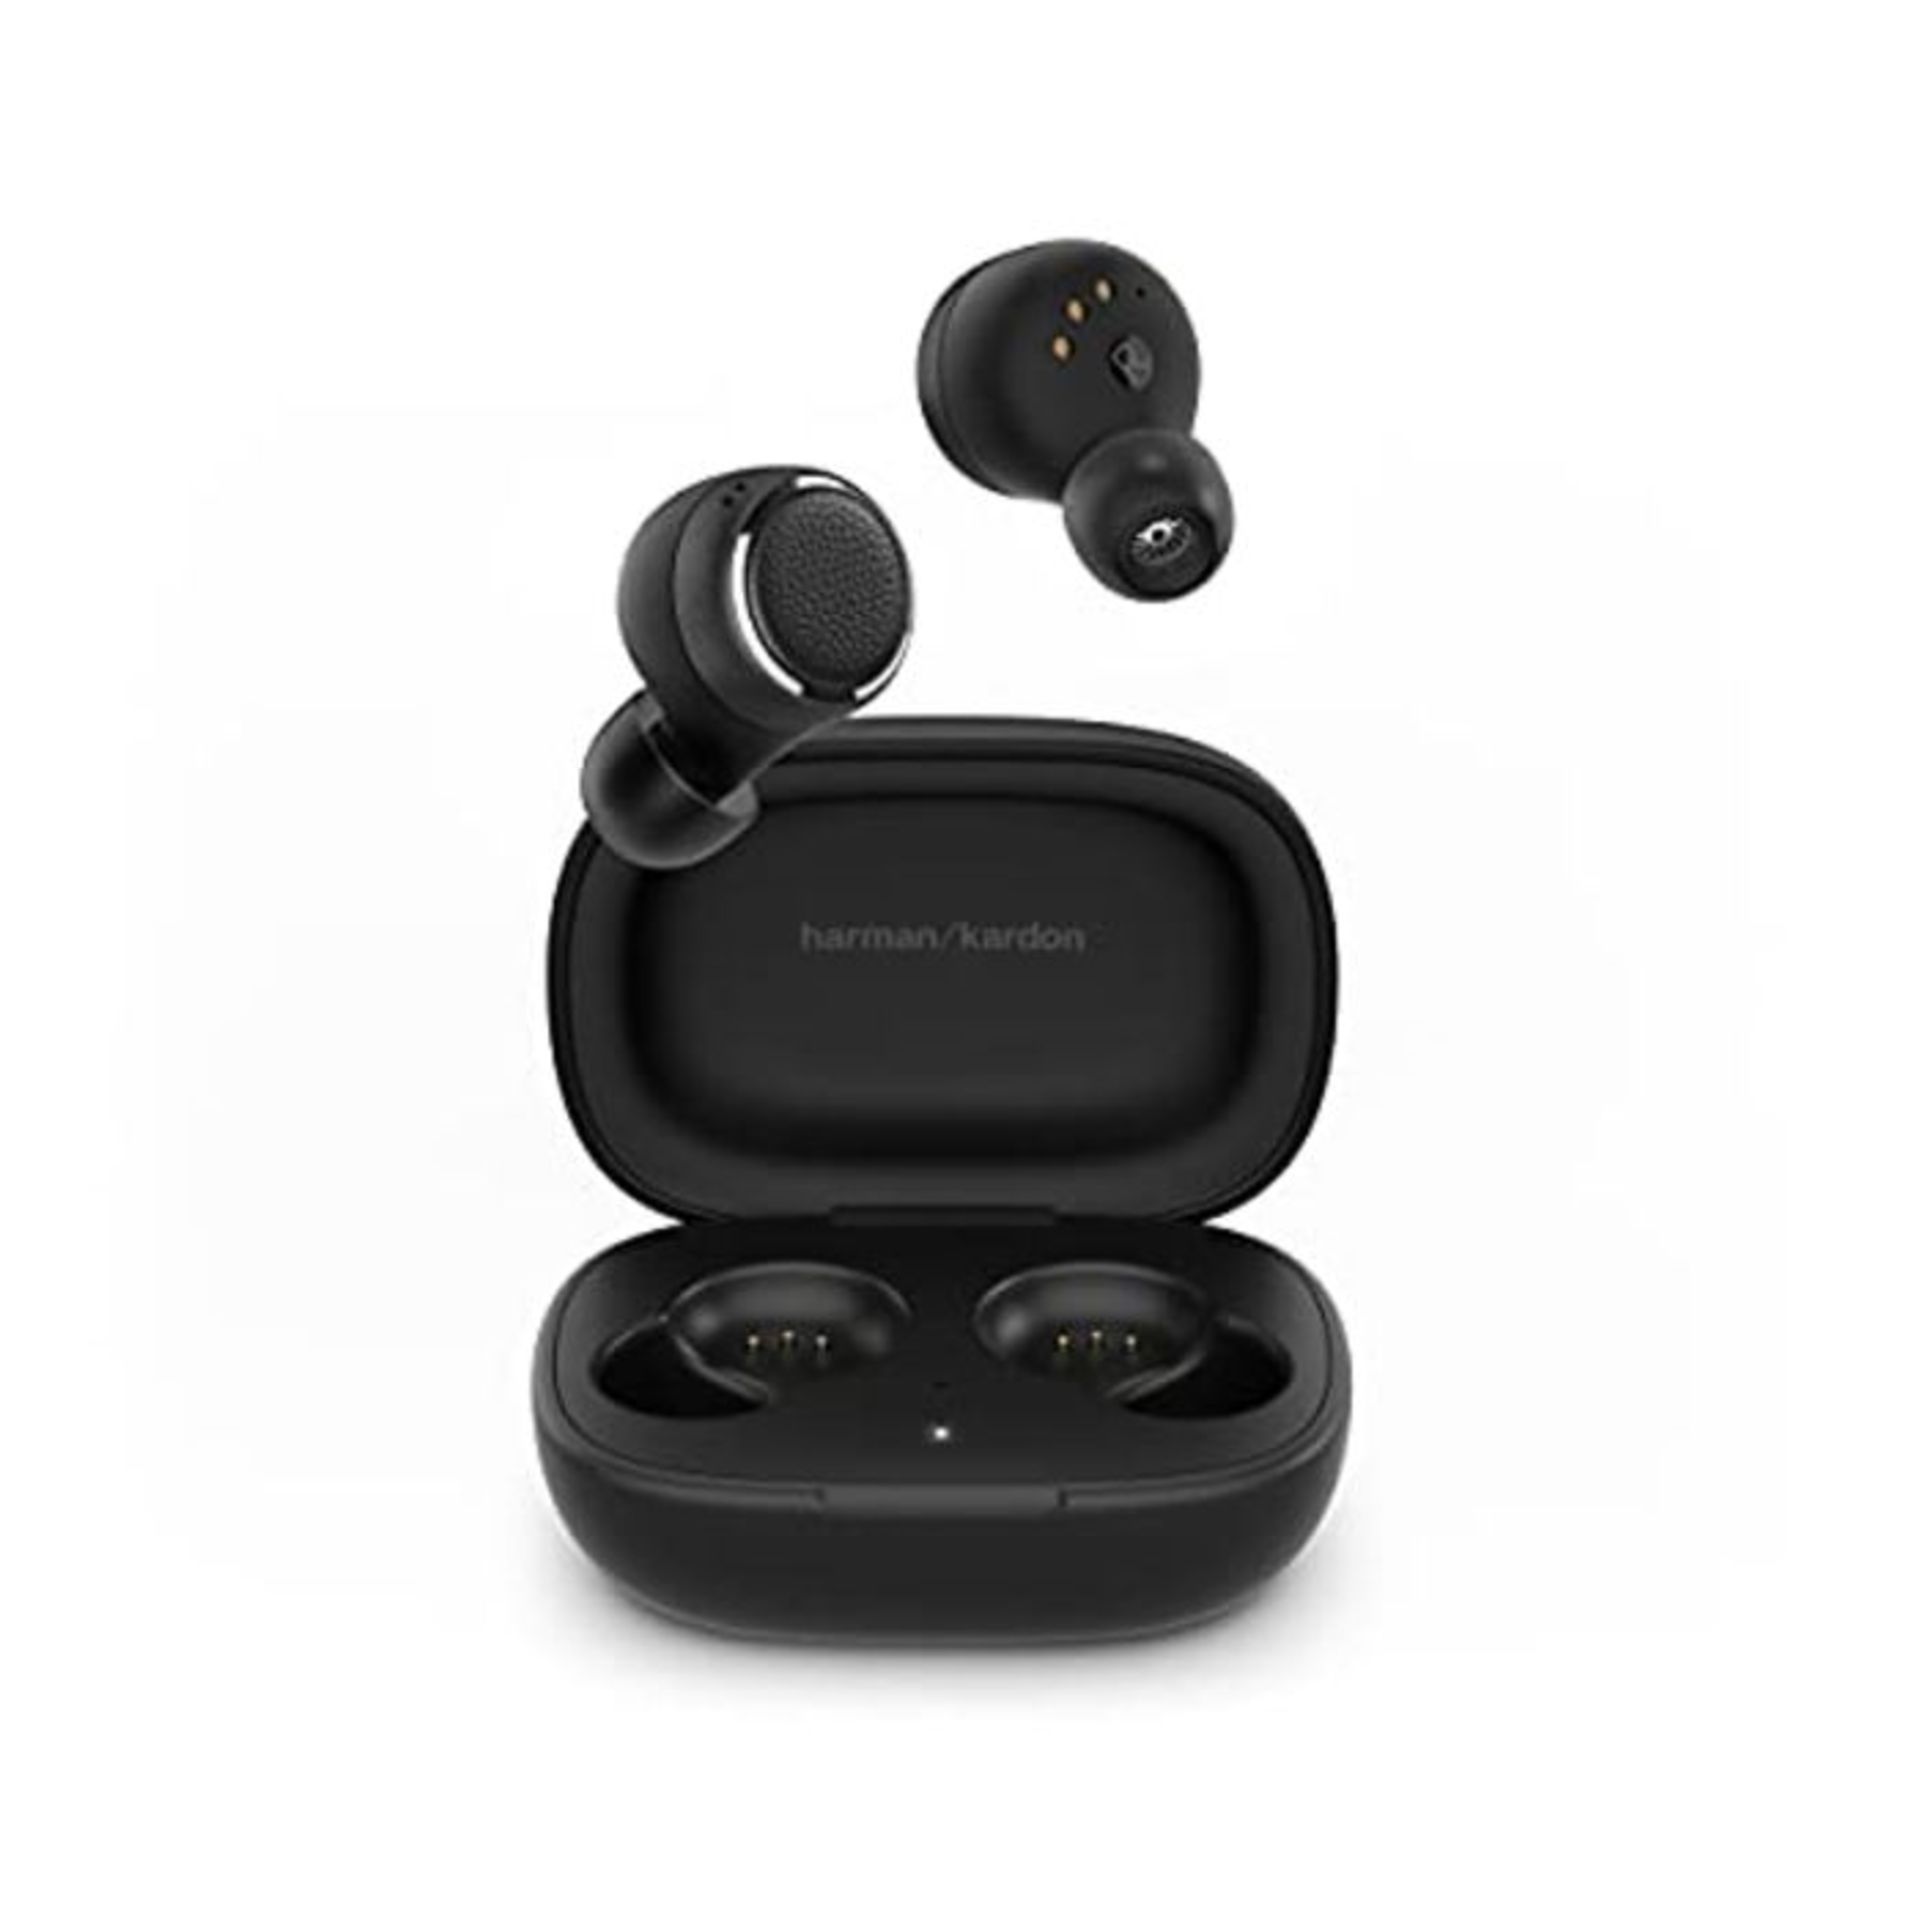 RRP £126.00 Harman Kardon FLY TWS - True wireless in-ear Bluetooth headphones with built-in Google